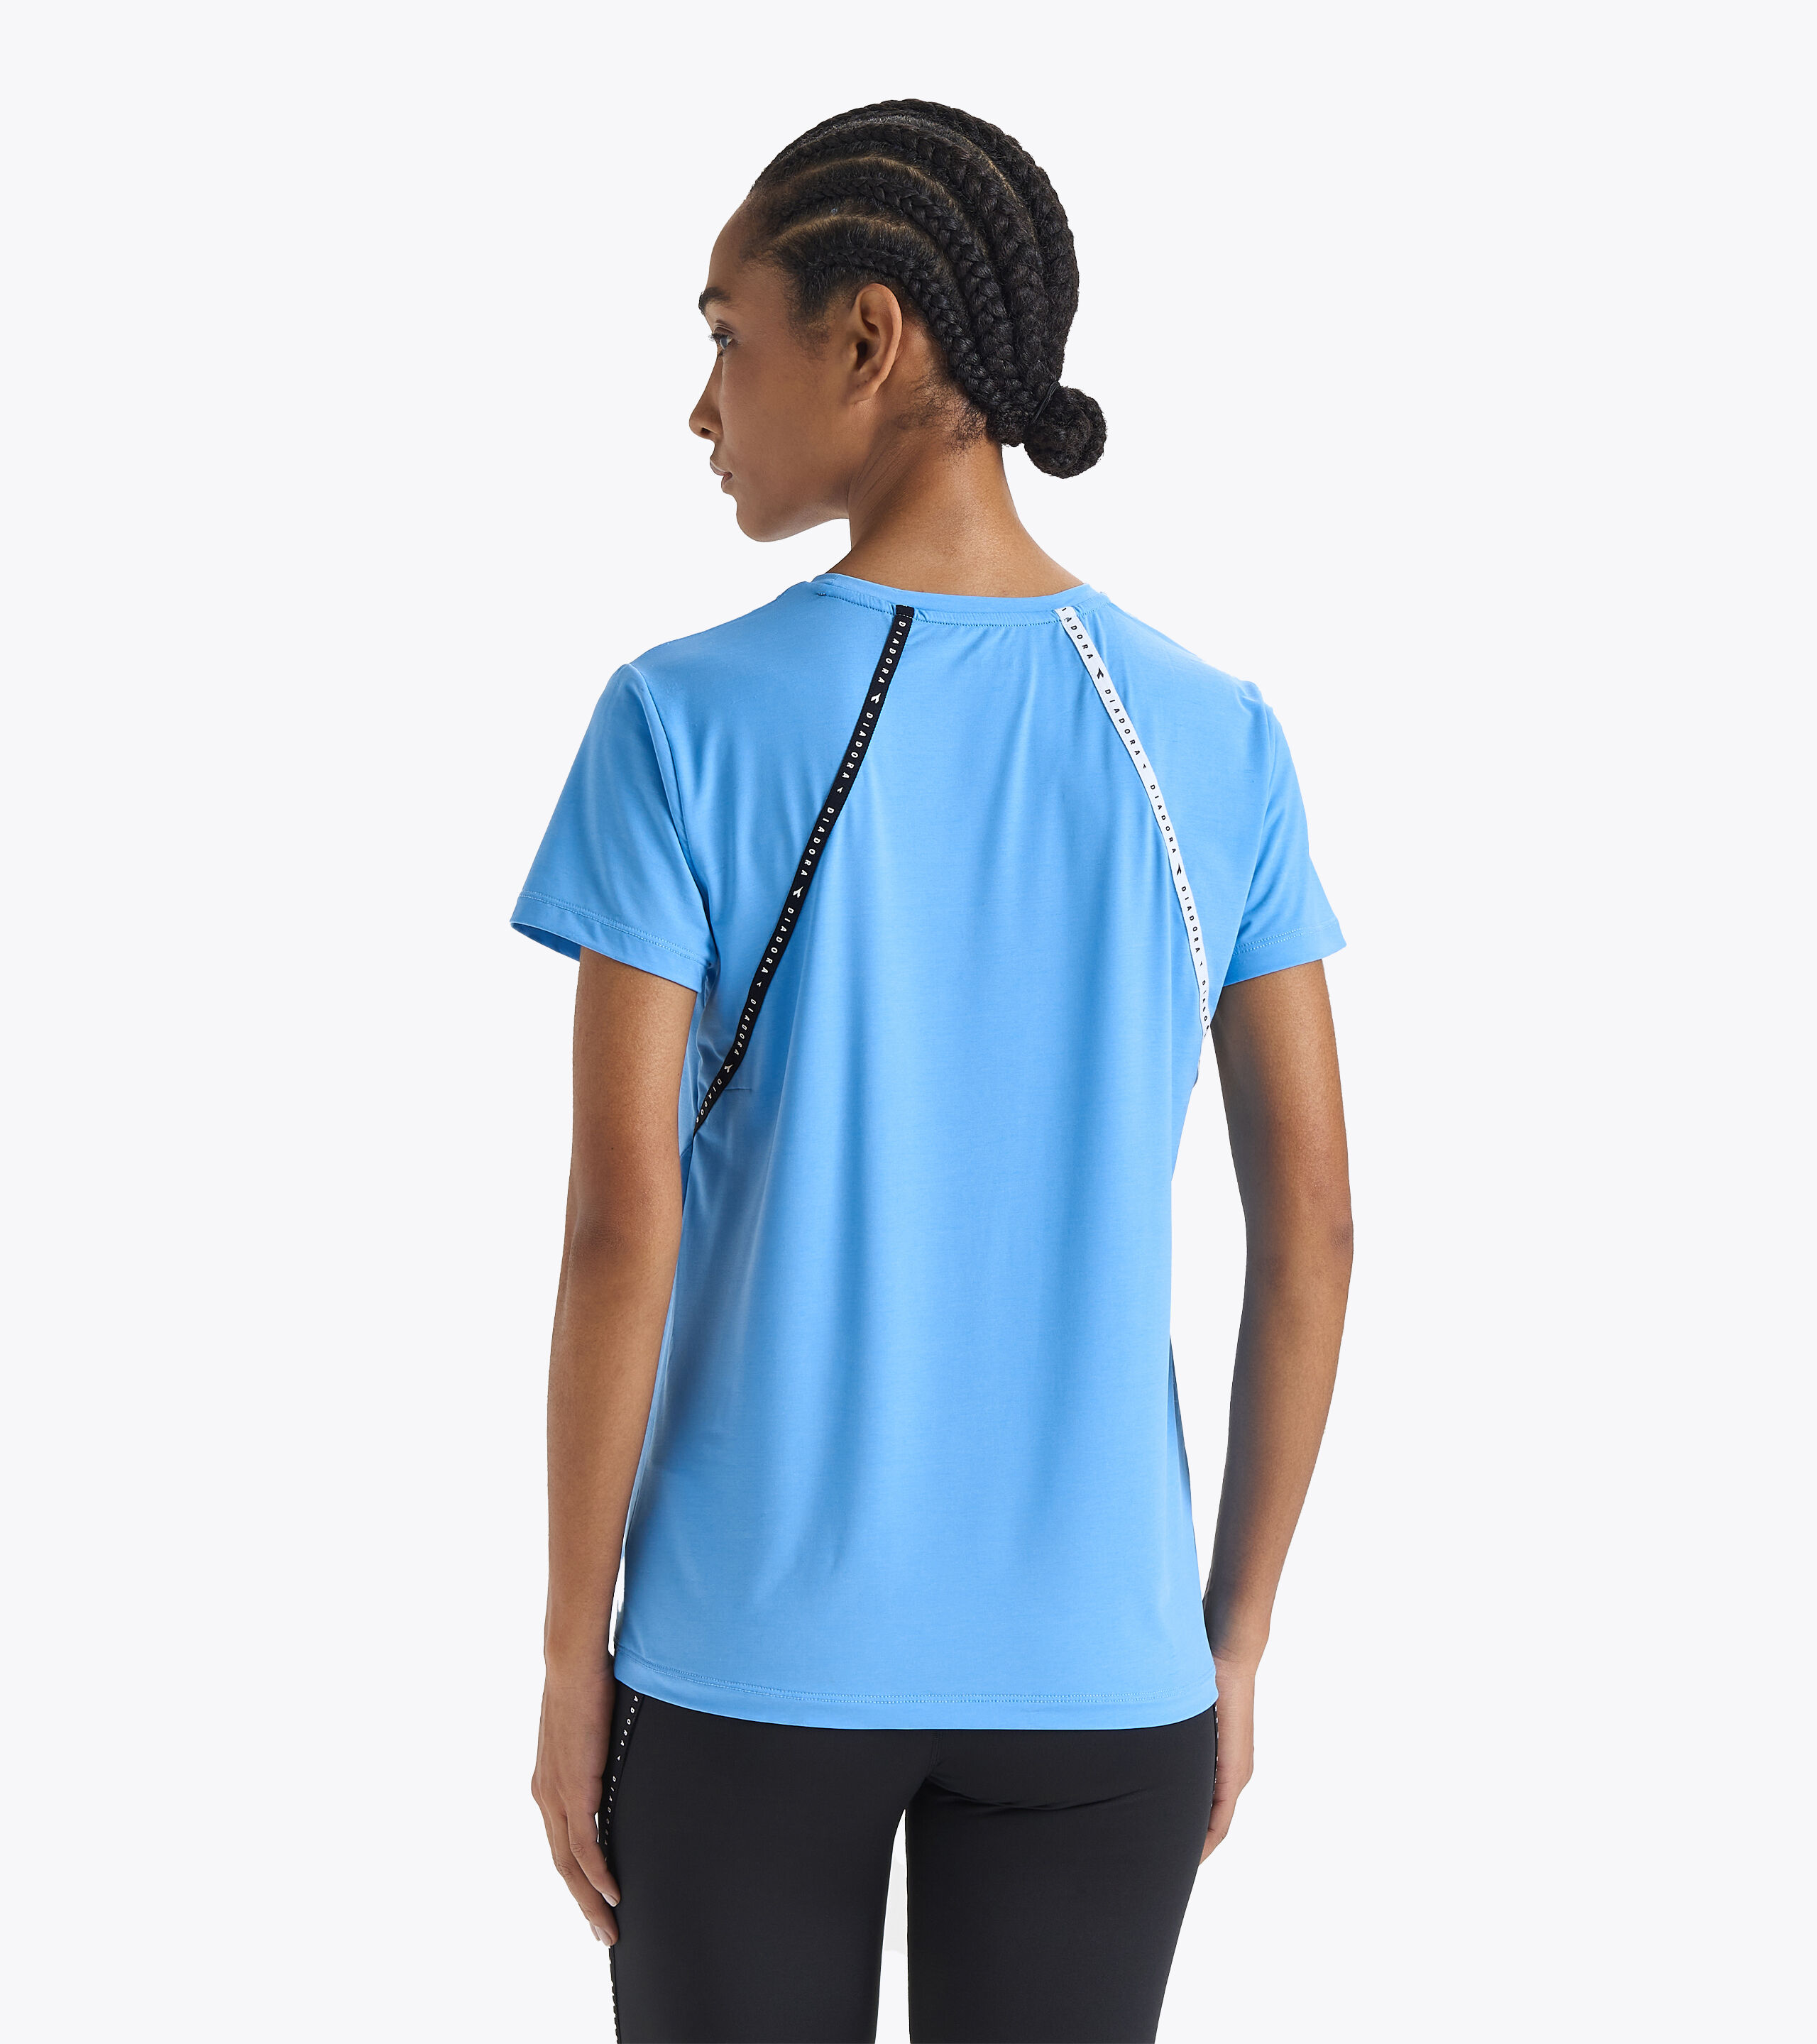 L. SS T-SHIRT BE ONE Running t-shirt - Women - Diadora Online Store US